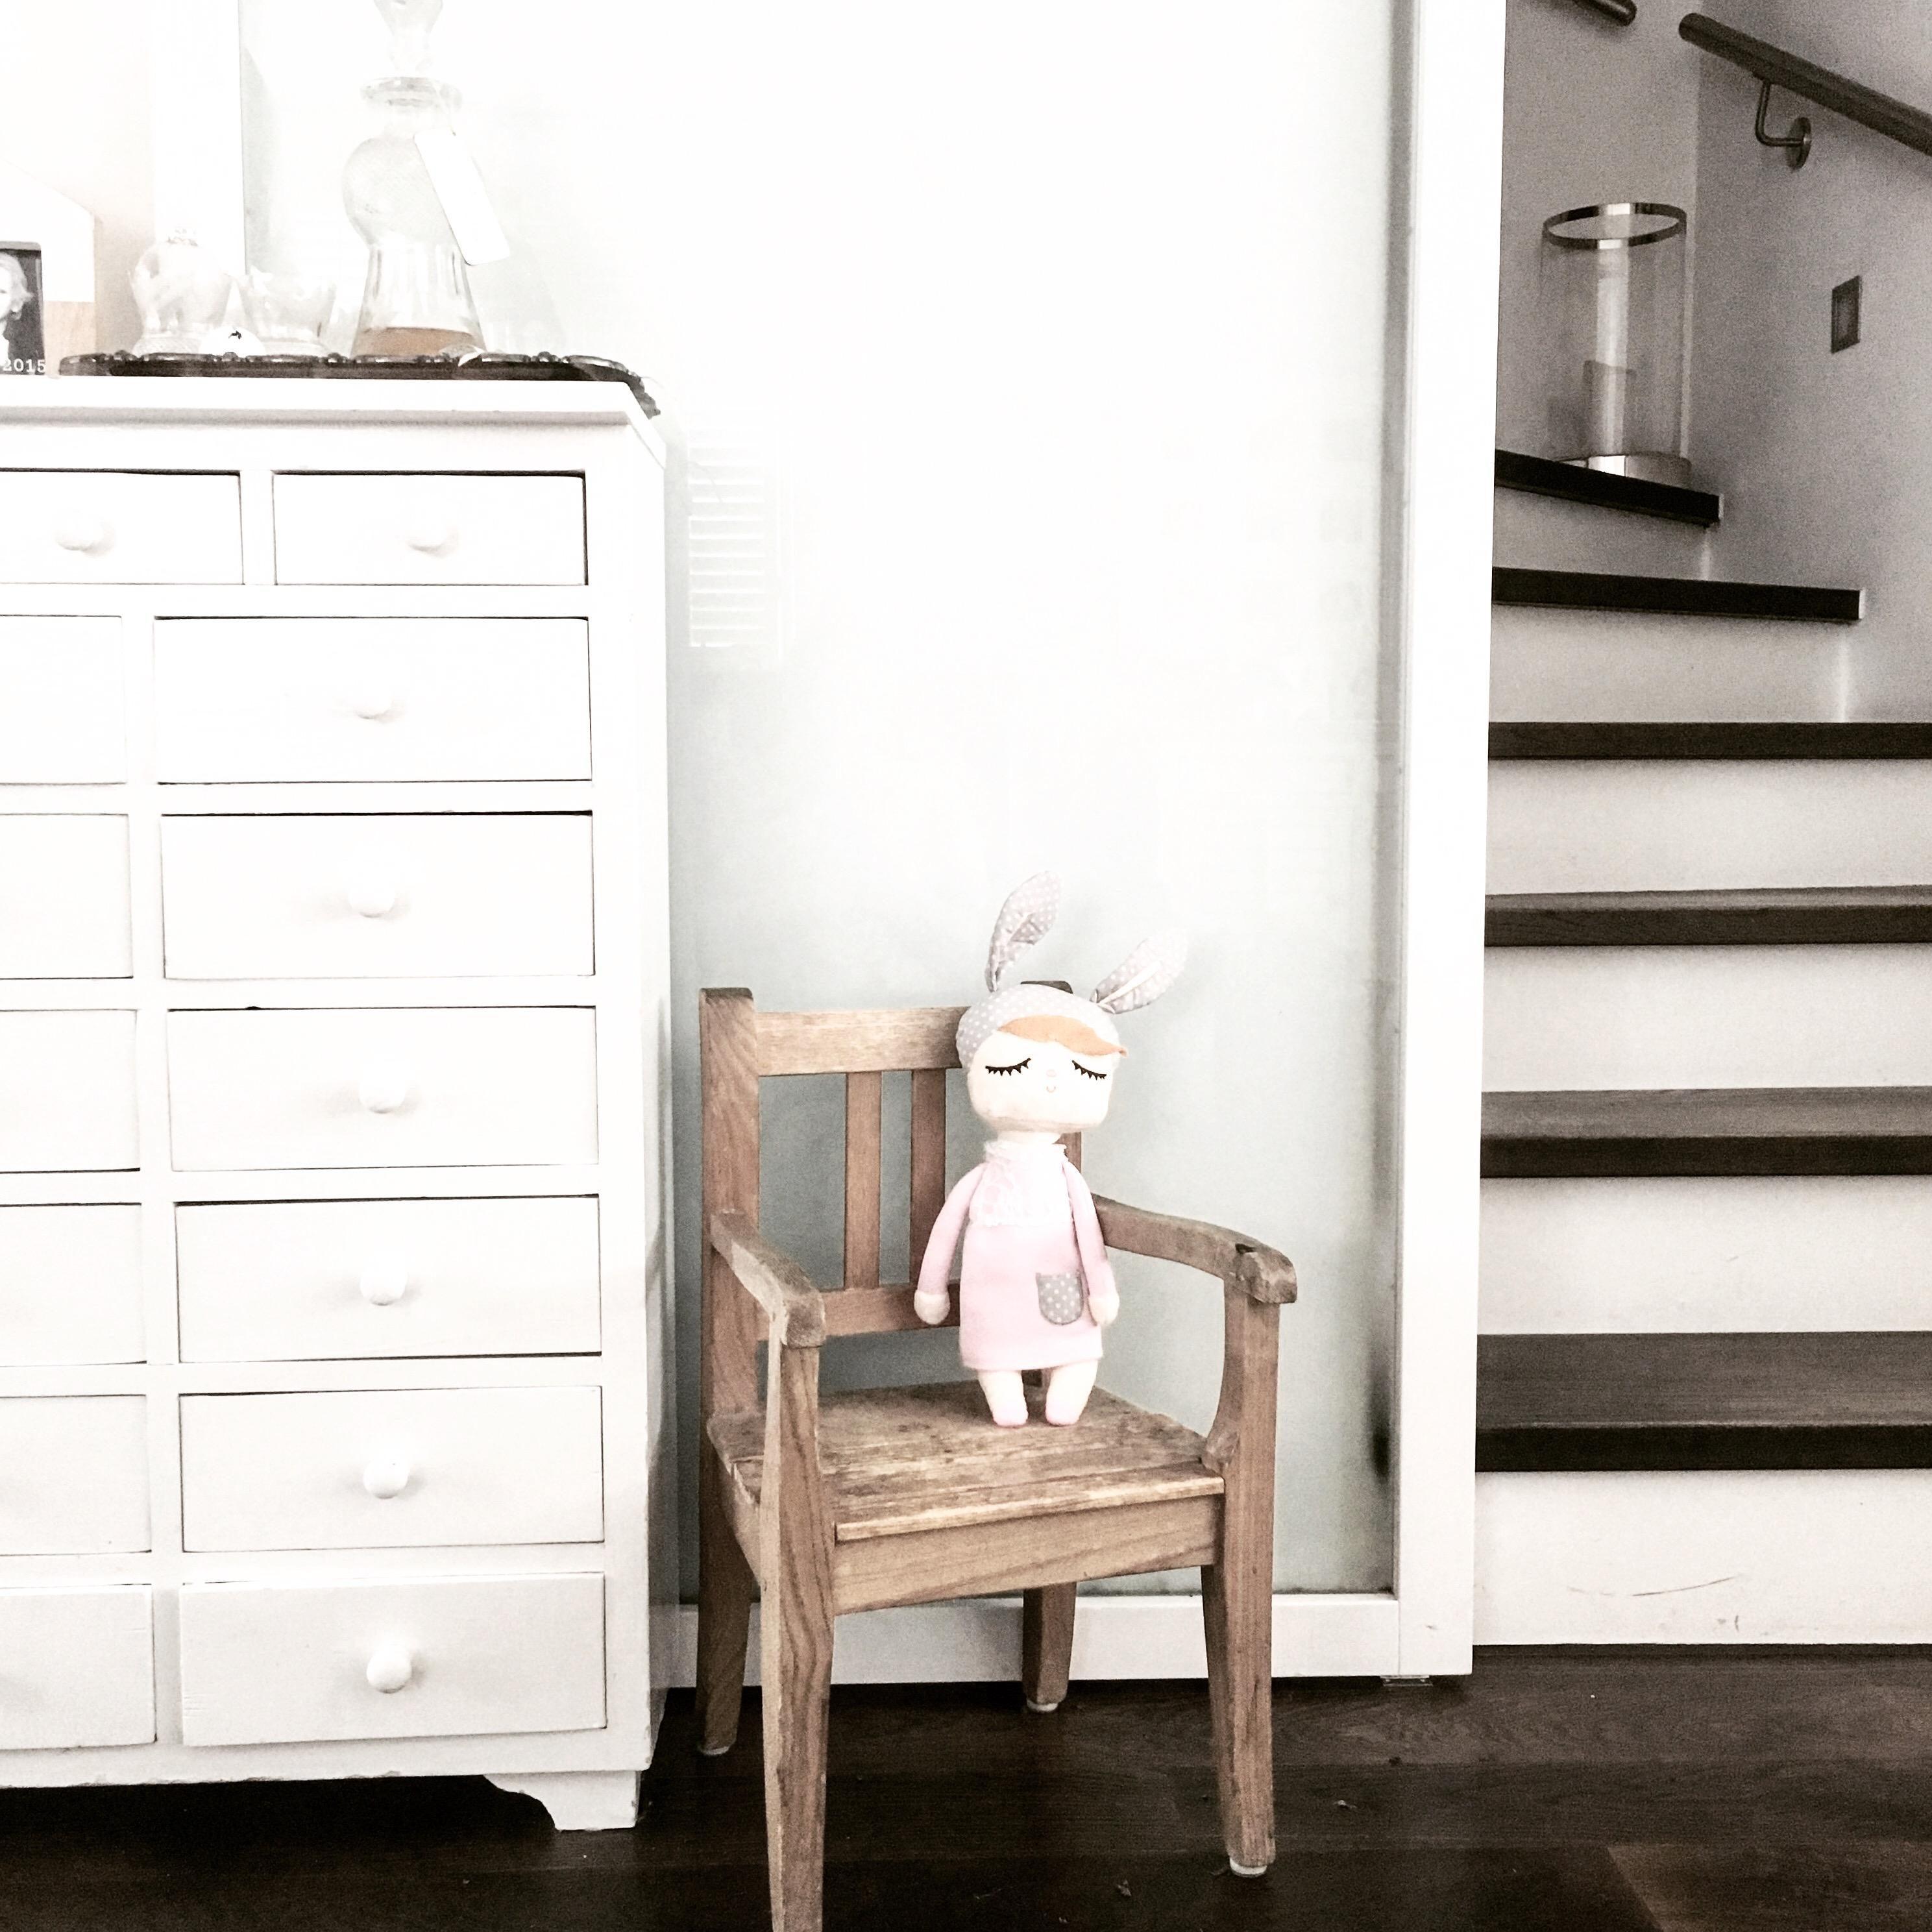 Mein kleiner Kinderstuhl ist noch immer eins meiner Lieblingsmöbelstücke. #neuhier #white #kids #chair